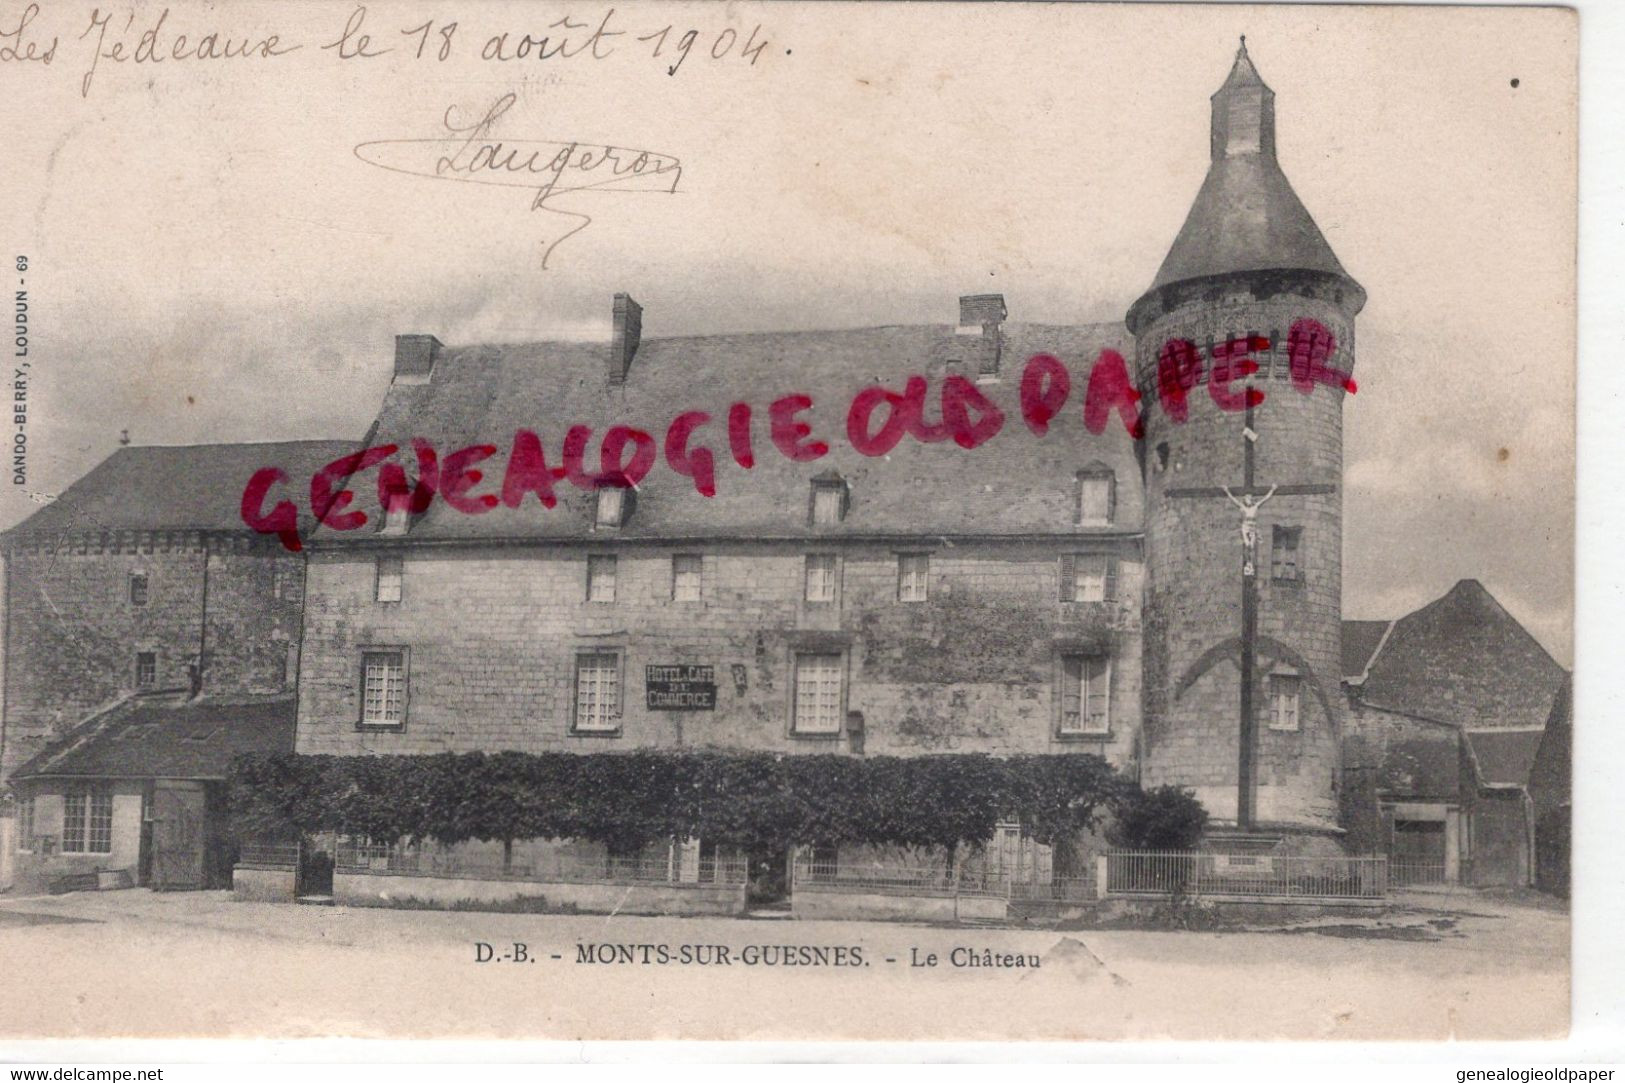 86- MONTS SUR GUESNES - LE CHATEAU - LES JEDEAUX 18 AOUT 1904 - VIENNE - Monts Sur Guesnes